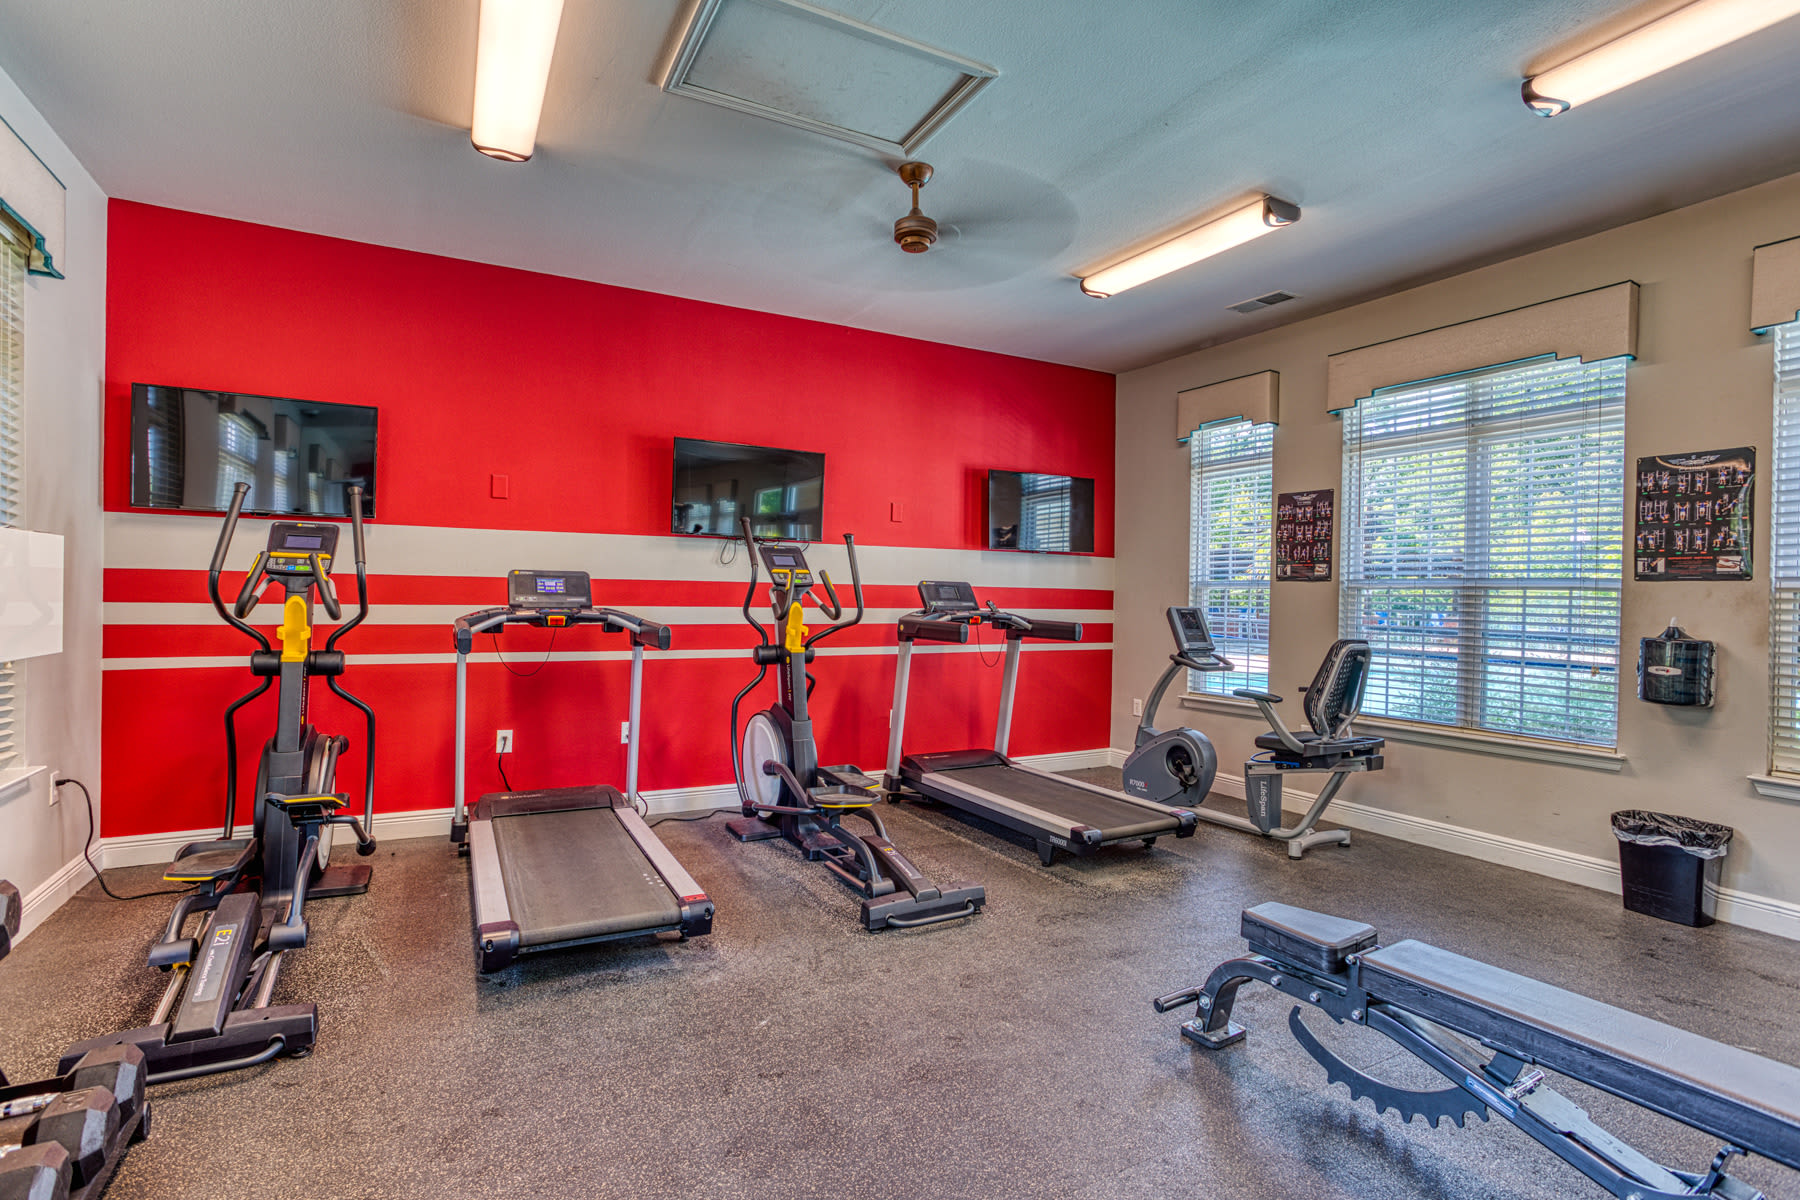 Fitness center at Alaris Village in Winston Salem, North Carolina